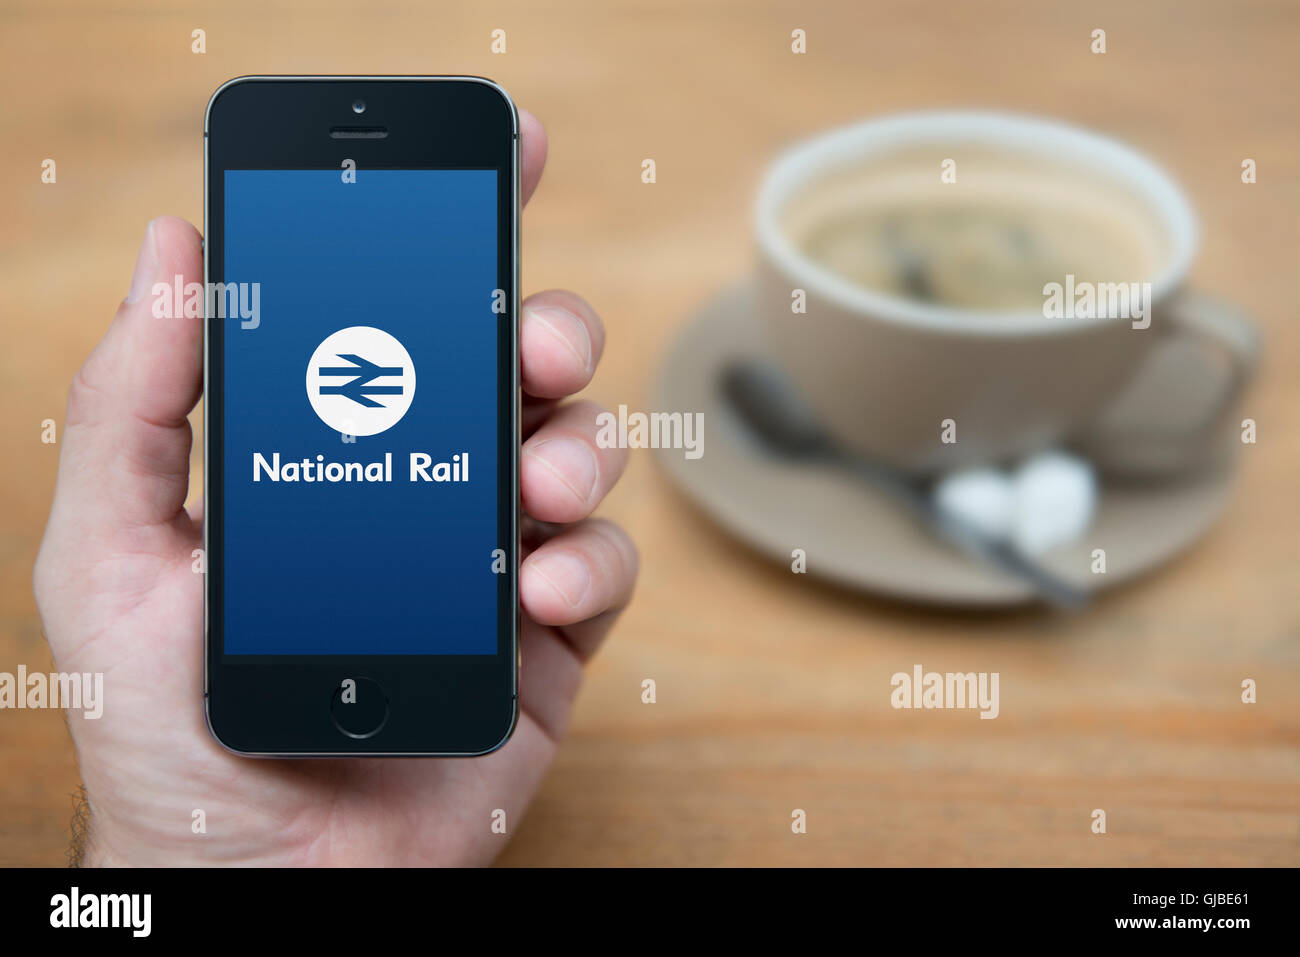 Un uomo guarda al suo iPhone che visualizza il National Rail logo, mentre sat con una tazza di caffè (solo uso editoriale). Foto Stock